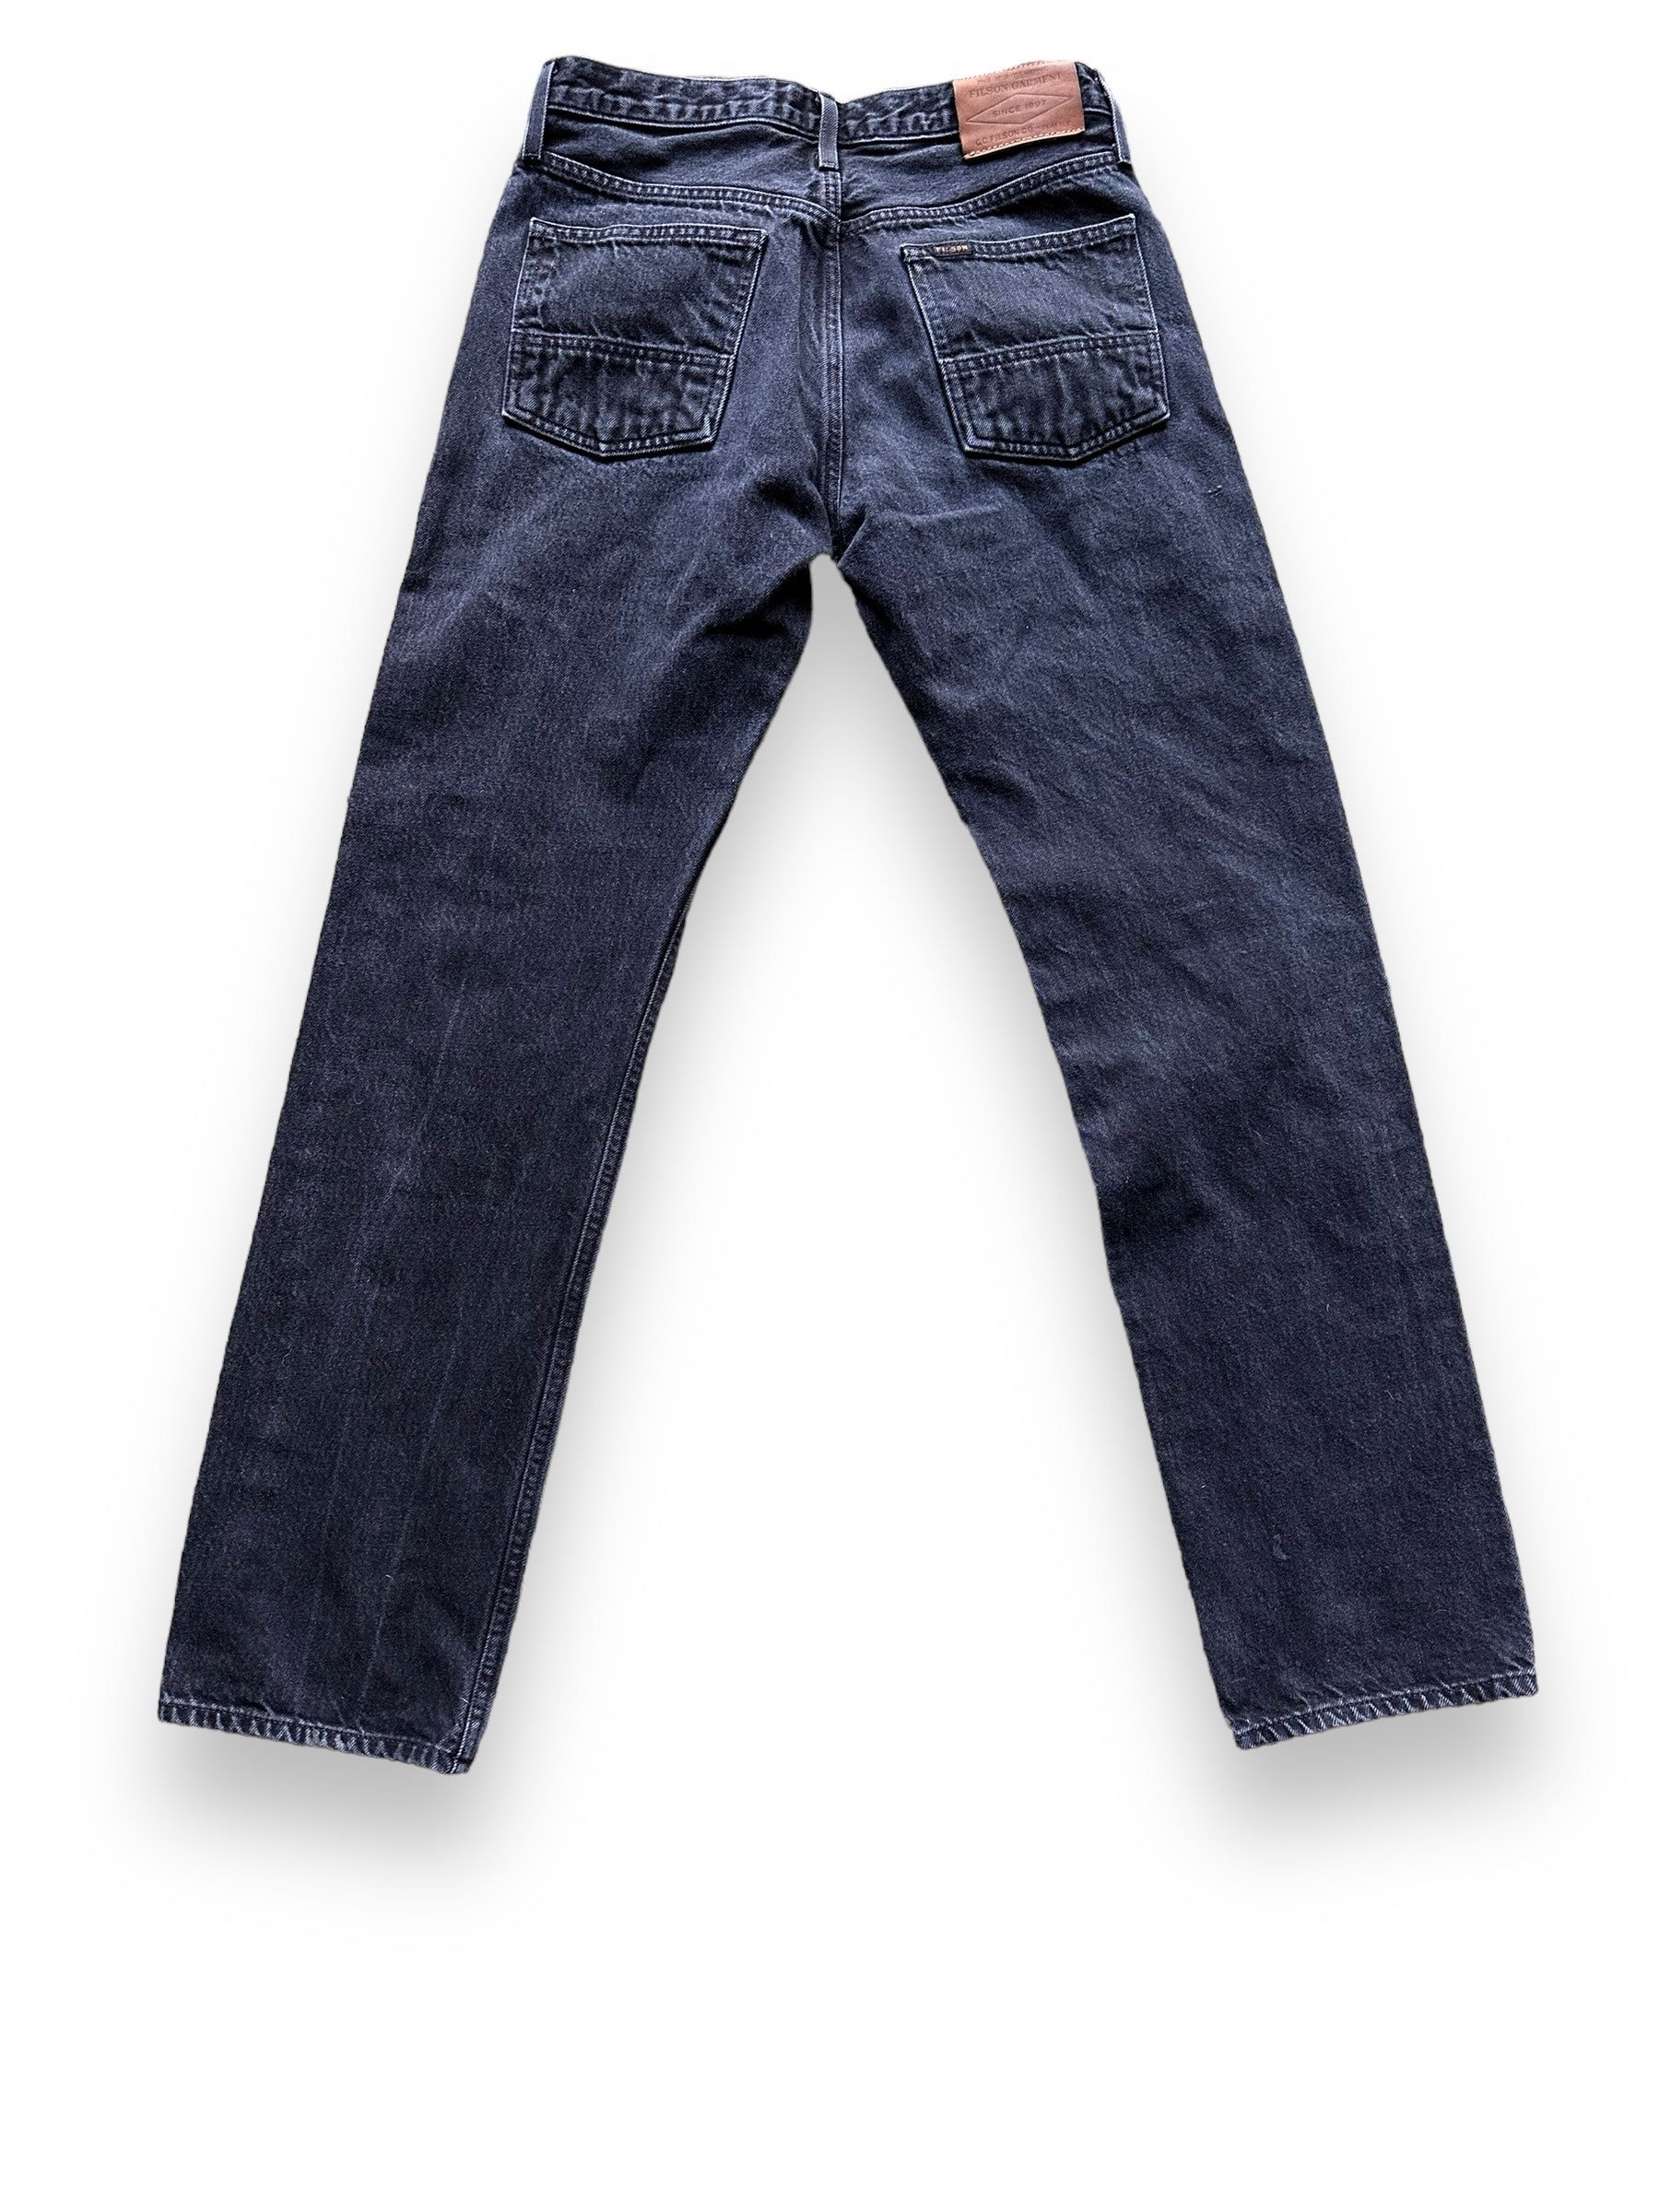 Rear View of Black Filson Jeans W31 |  Filson Dungarees | Filson Workwear Seattle